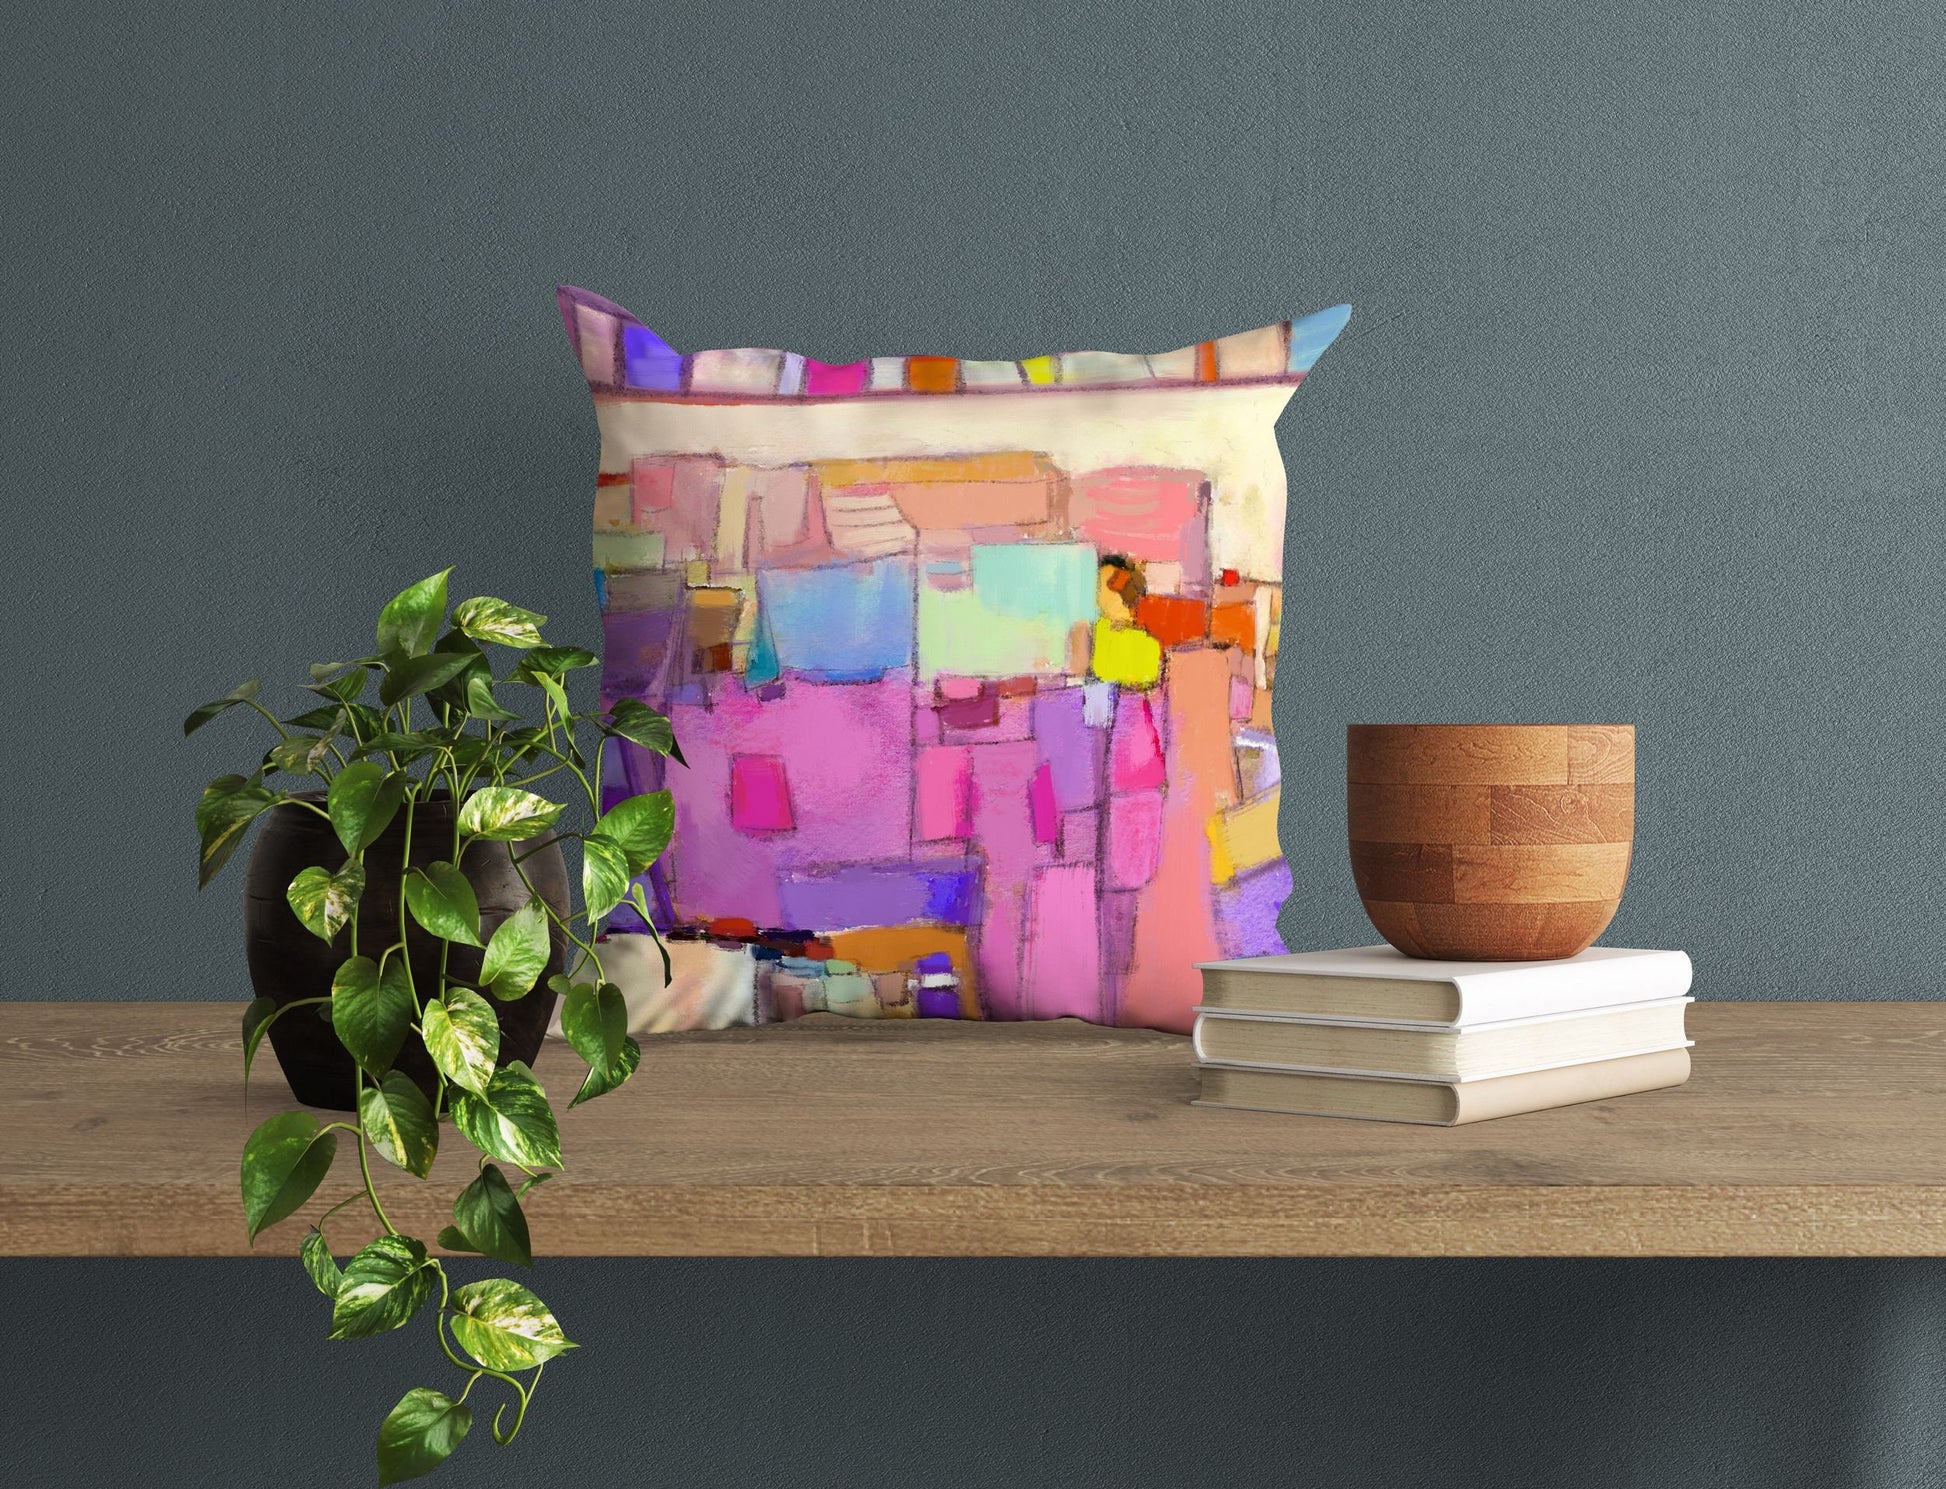 Throw Pillow, Abstract Pillow, Art Pillow, Colorful Pillow Case, Moder –  georgemillerart